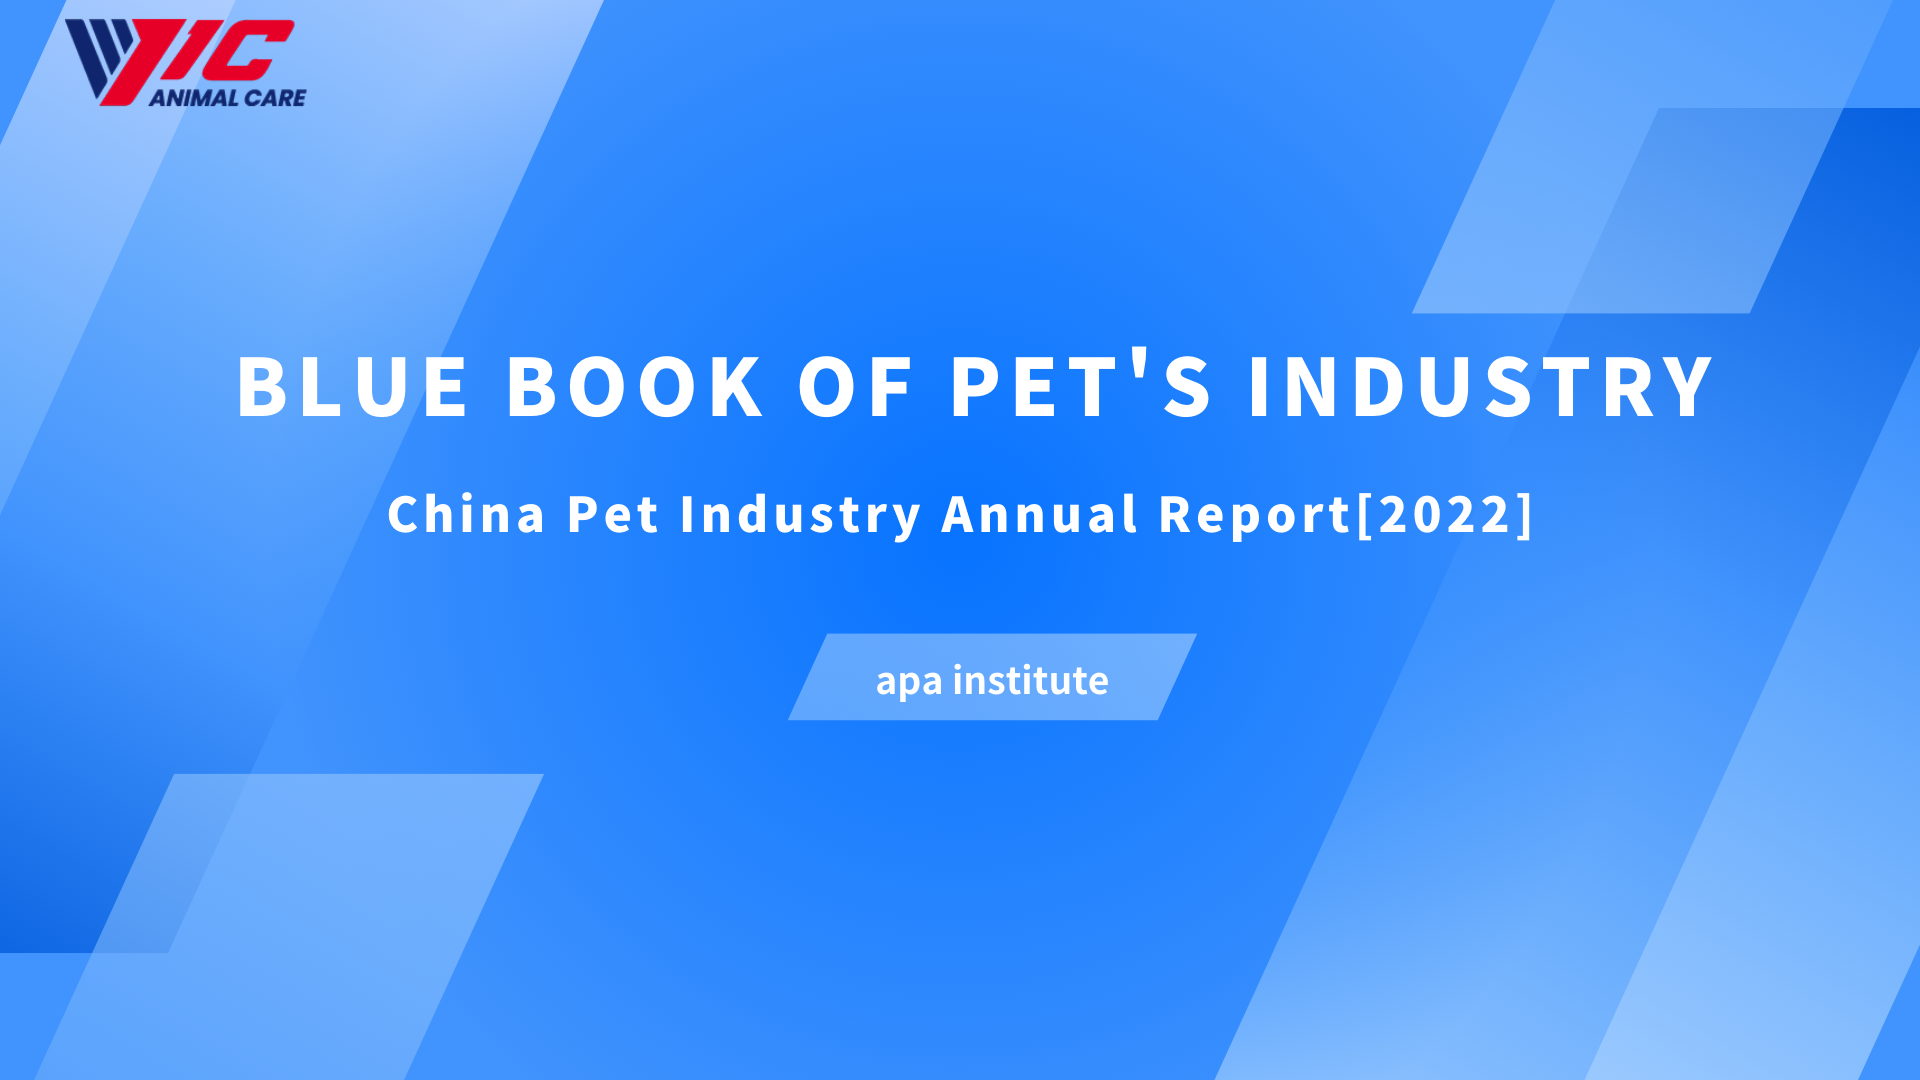 PET's ઇન્ડસ્ટ્રીનું બ્લુ બુક-ચાઇના પેટ ઇન્ડસ્ટ્રીનો વાર્ષિક અહેવાલ[2022]